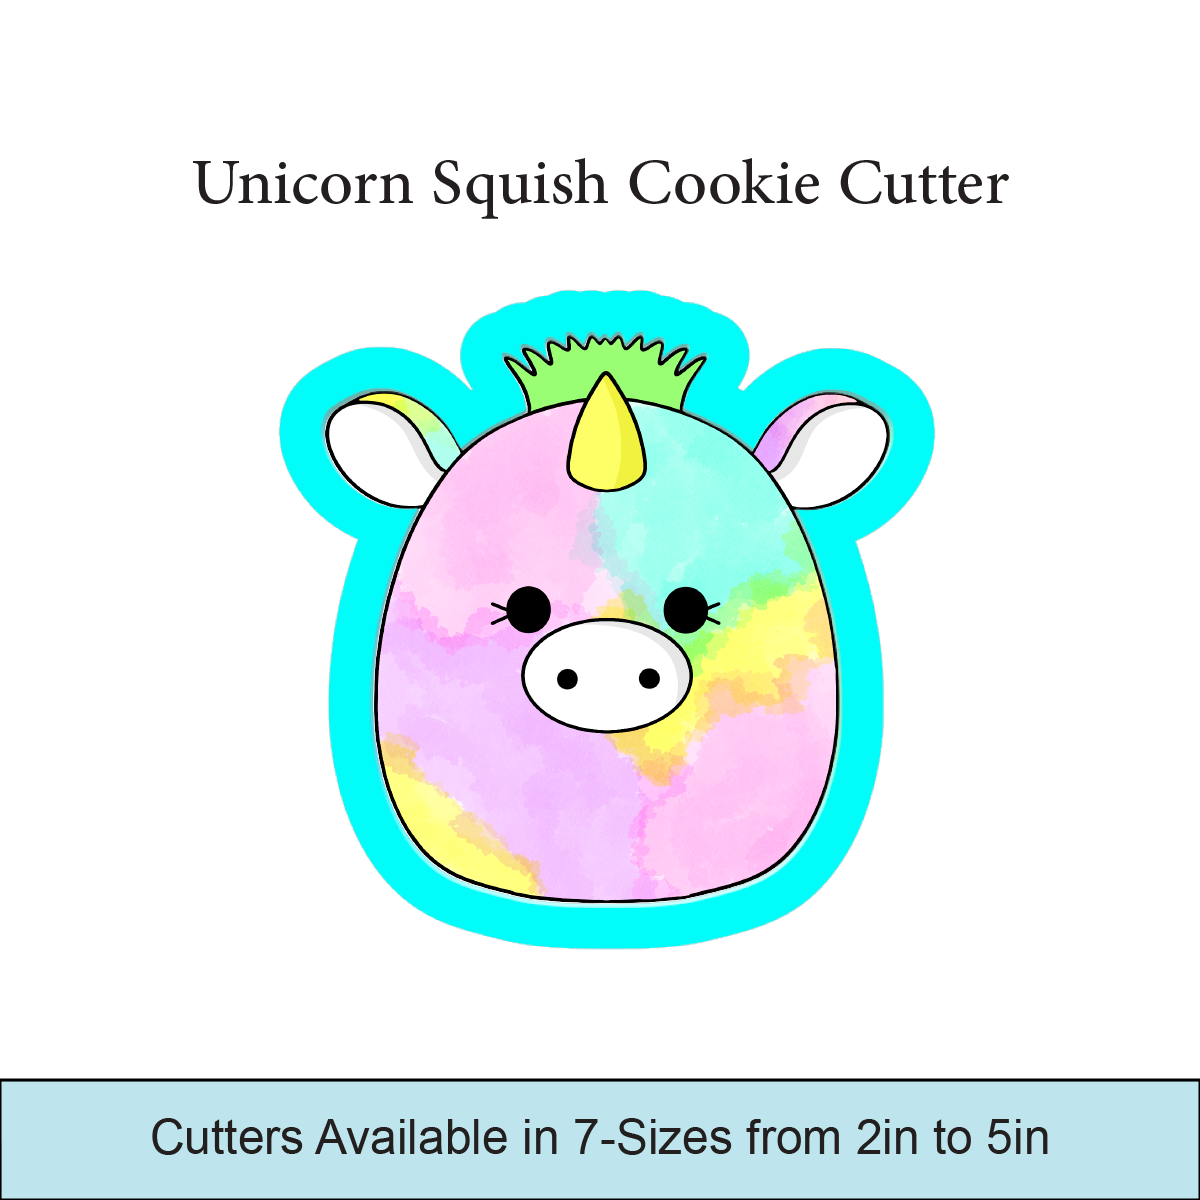 Unicorn Squish Cookie Cutters